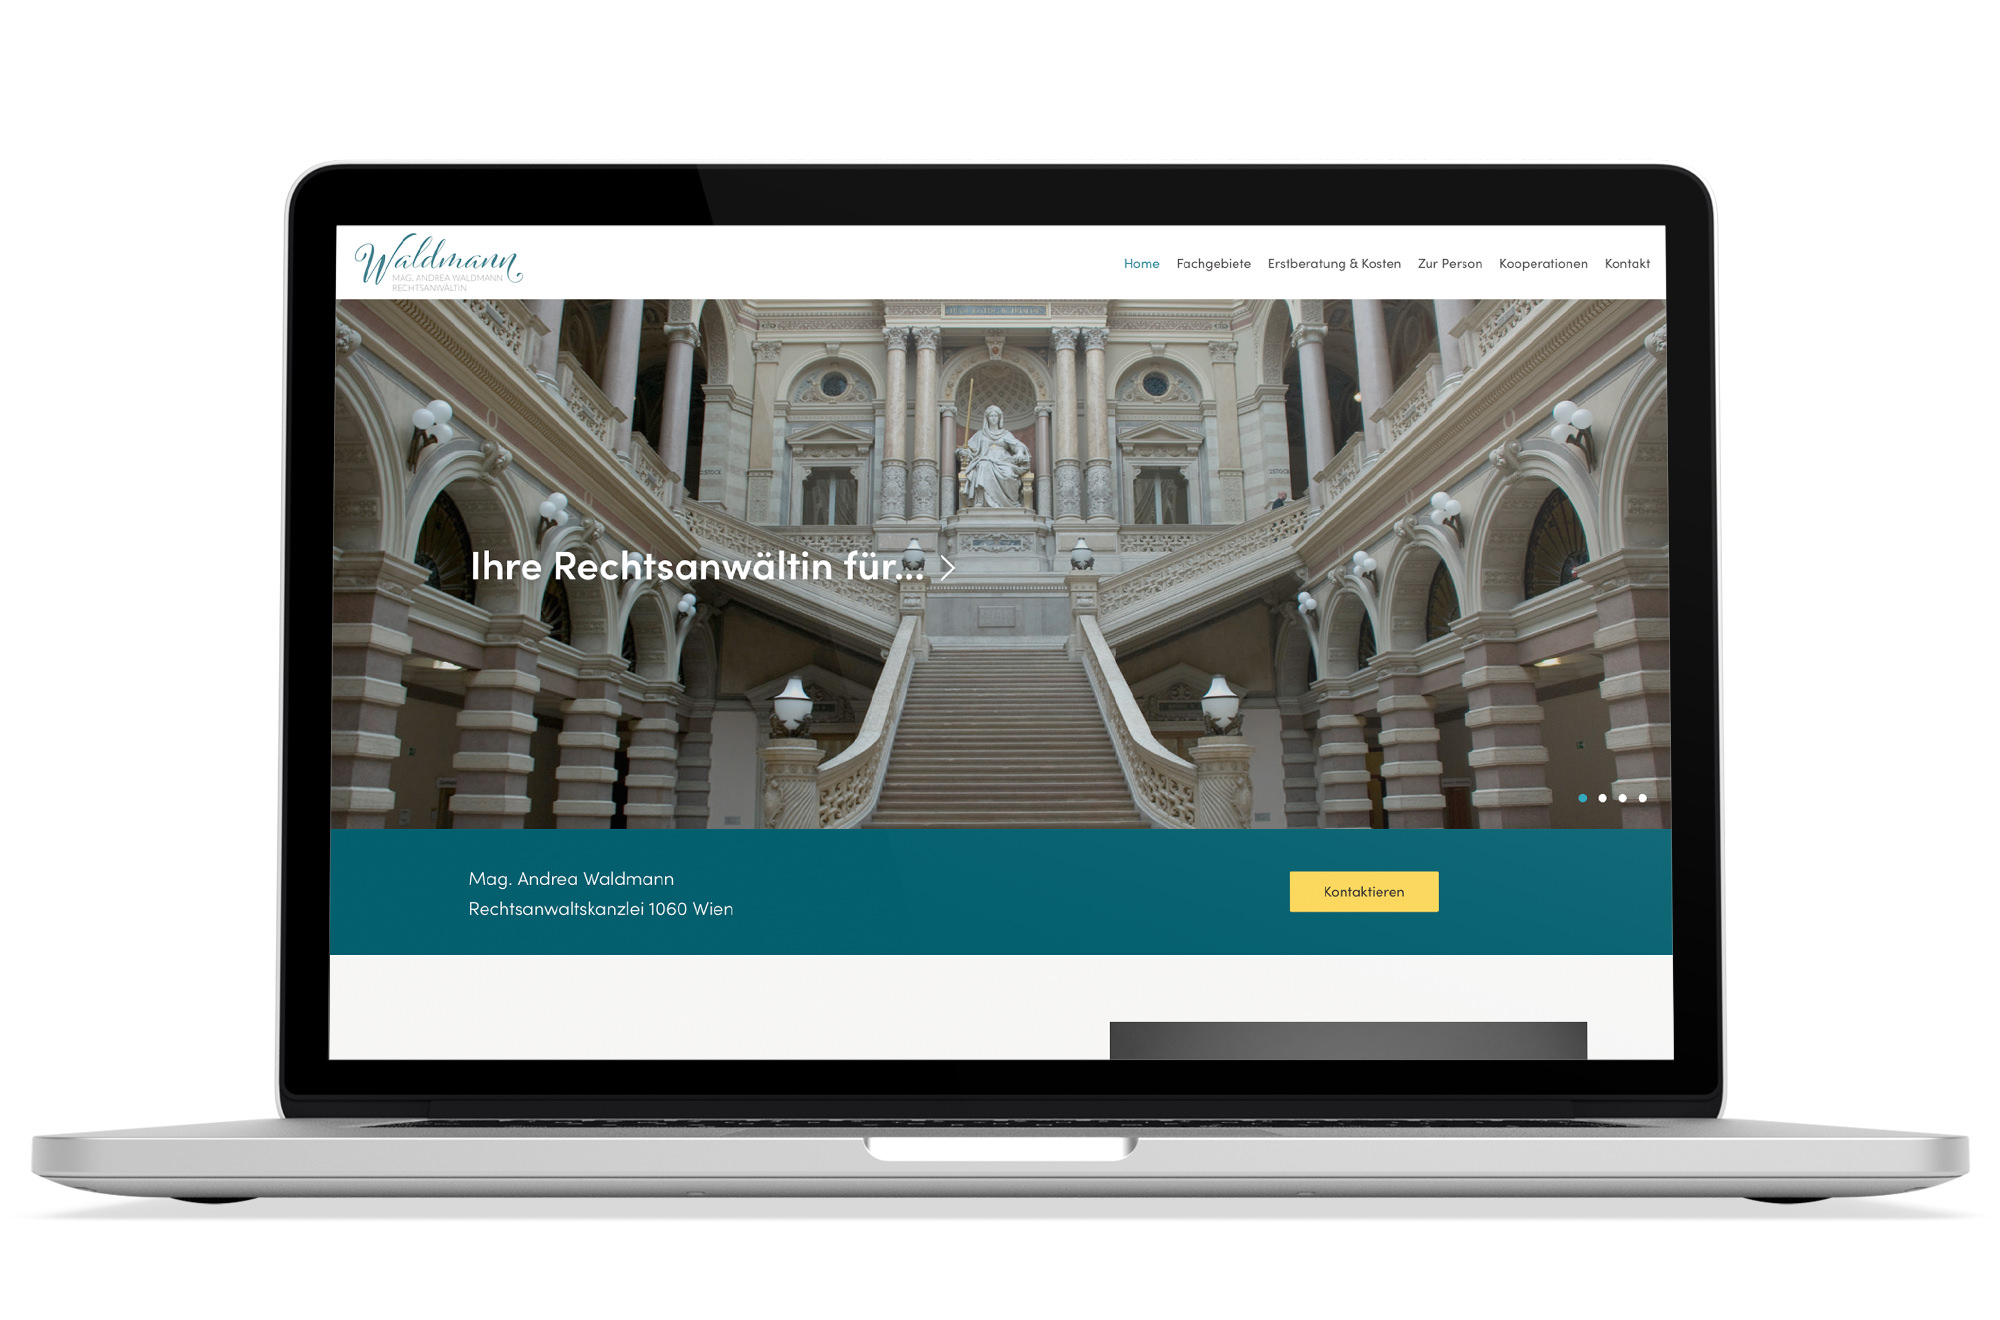 Webdesign Beispiel: Responsive Webdesign, WordPress für Rechtsanwältin 1060 Wien